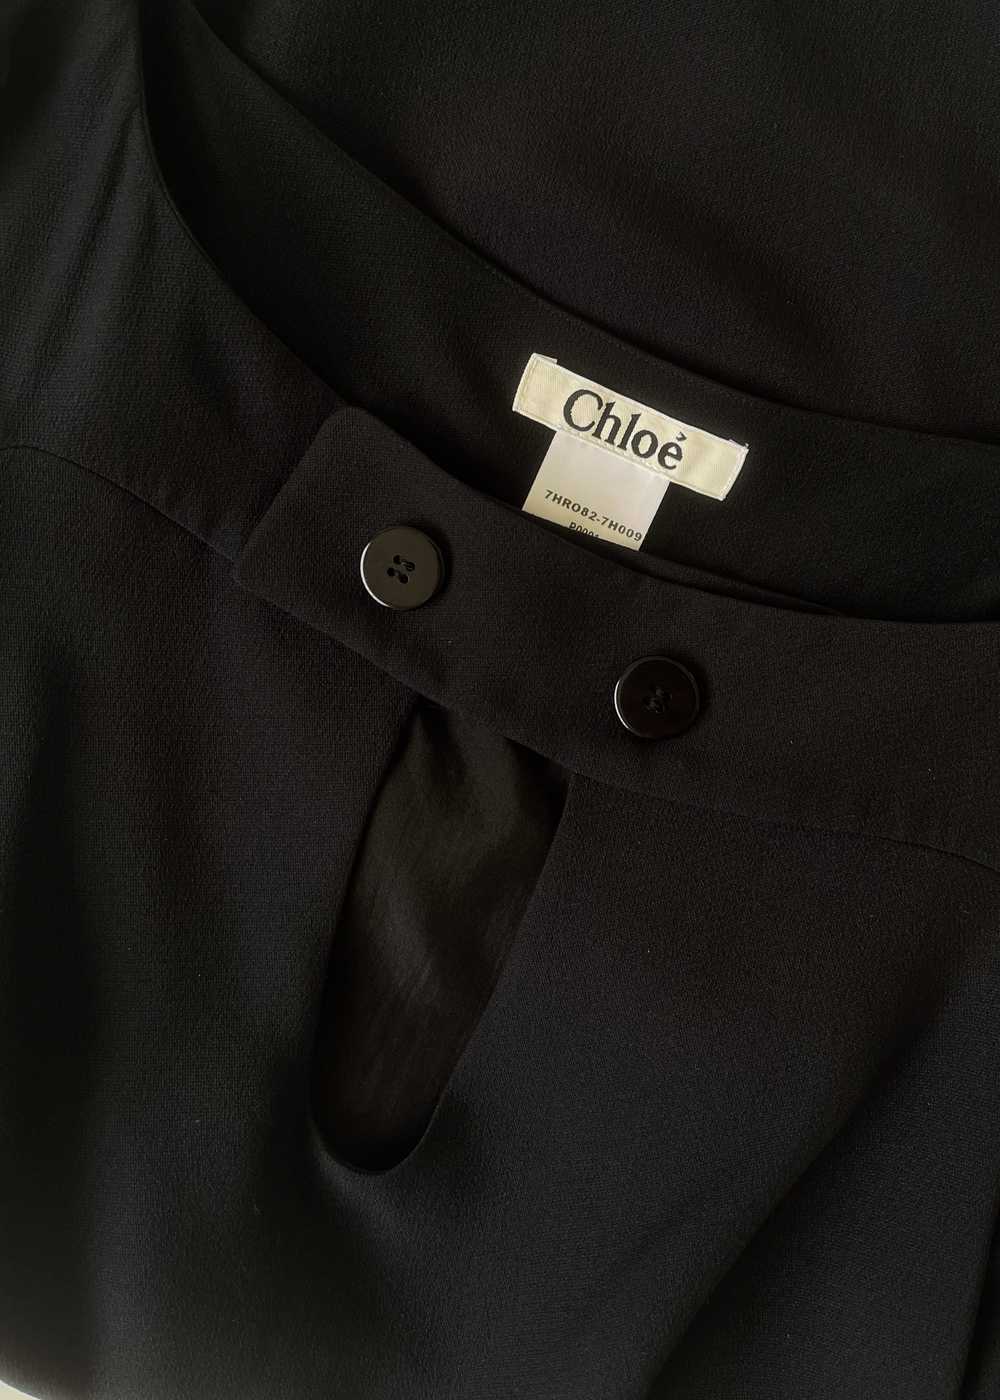 Vintage Chloe Black Mini Dress - image 5